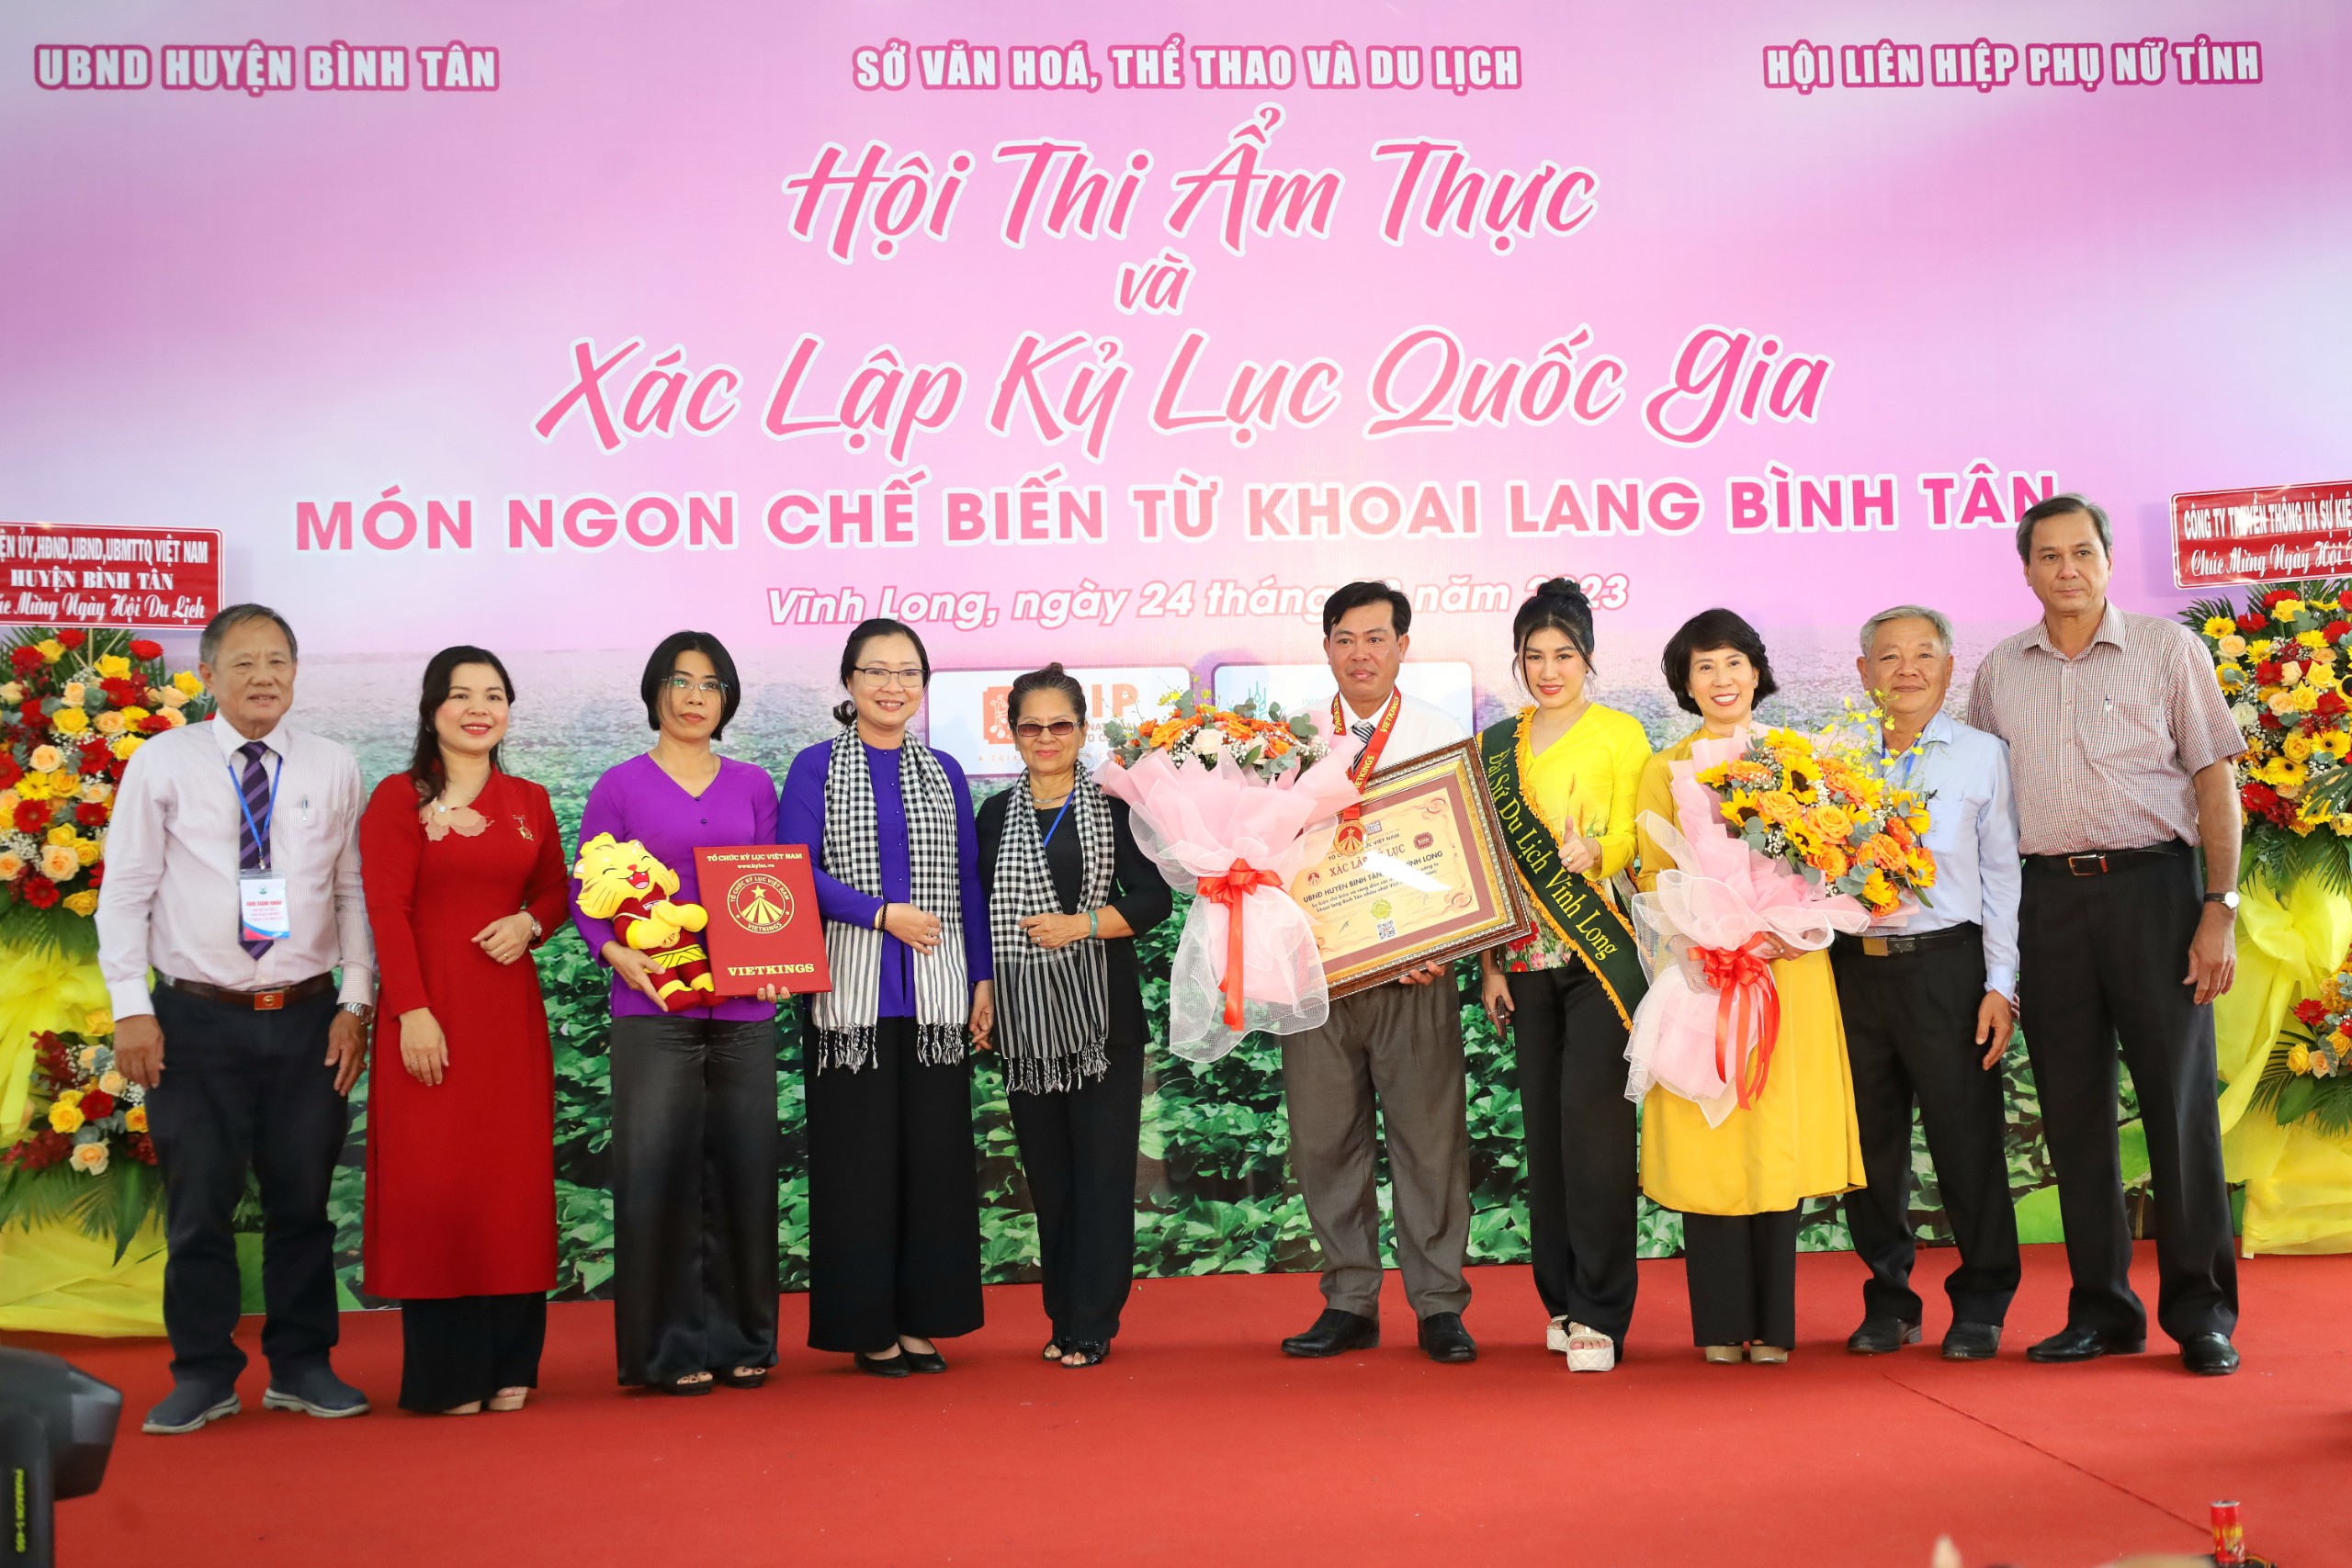 Các đại biểu chụp hình lưu niệm tại sự kiện Xác lập Kỷ lục Việt Nam cho 100 món ăn được chế biến từ khoai lang Bình Tân.